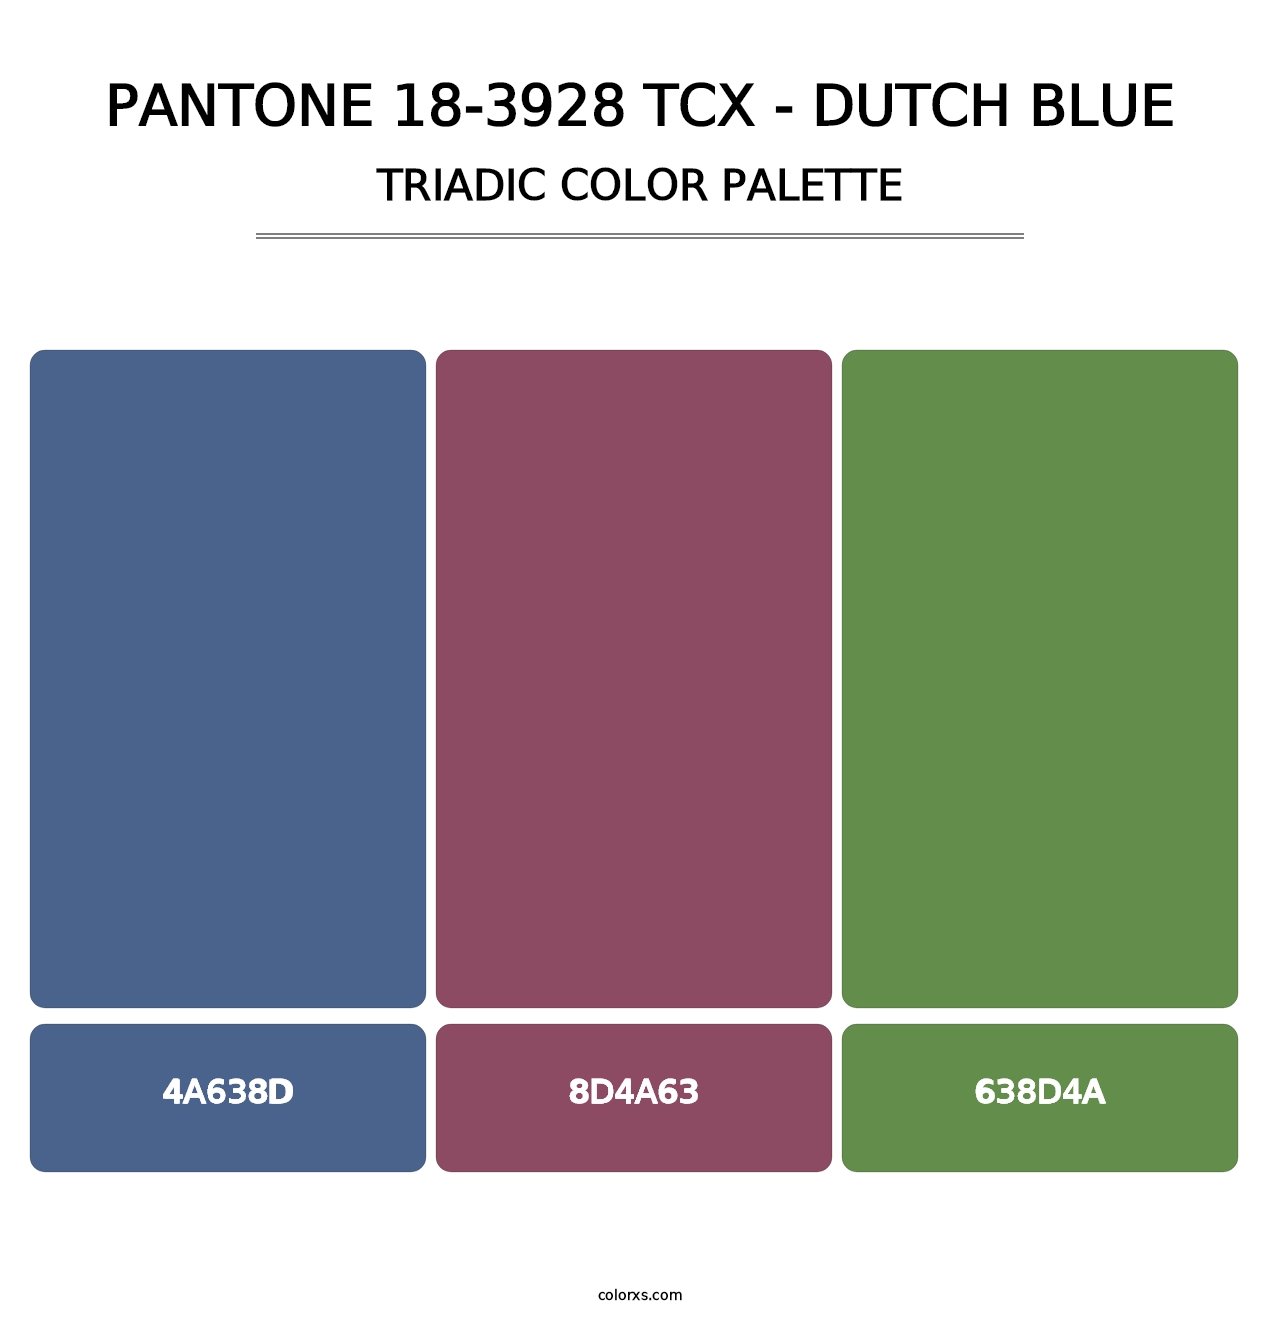 PANTONE 18-3928 TCX - Dutch Blue - Triadic Color Palette